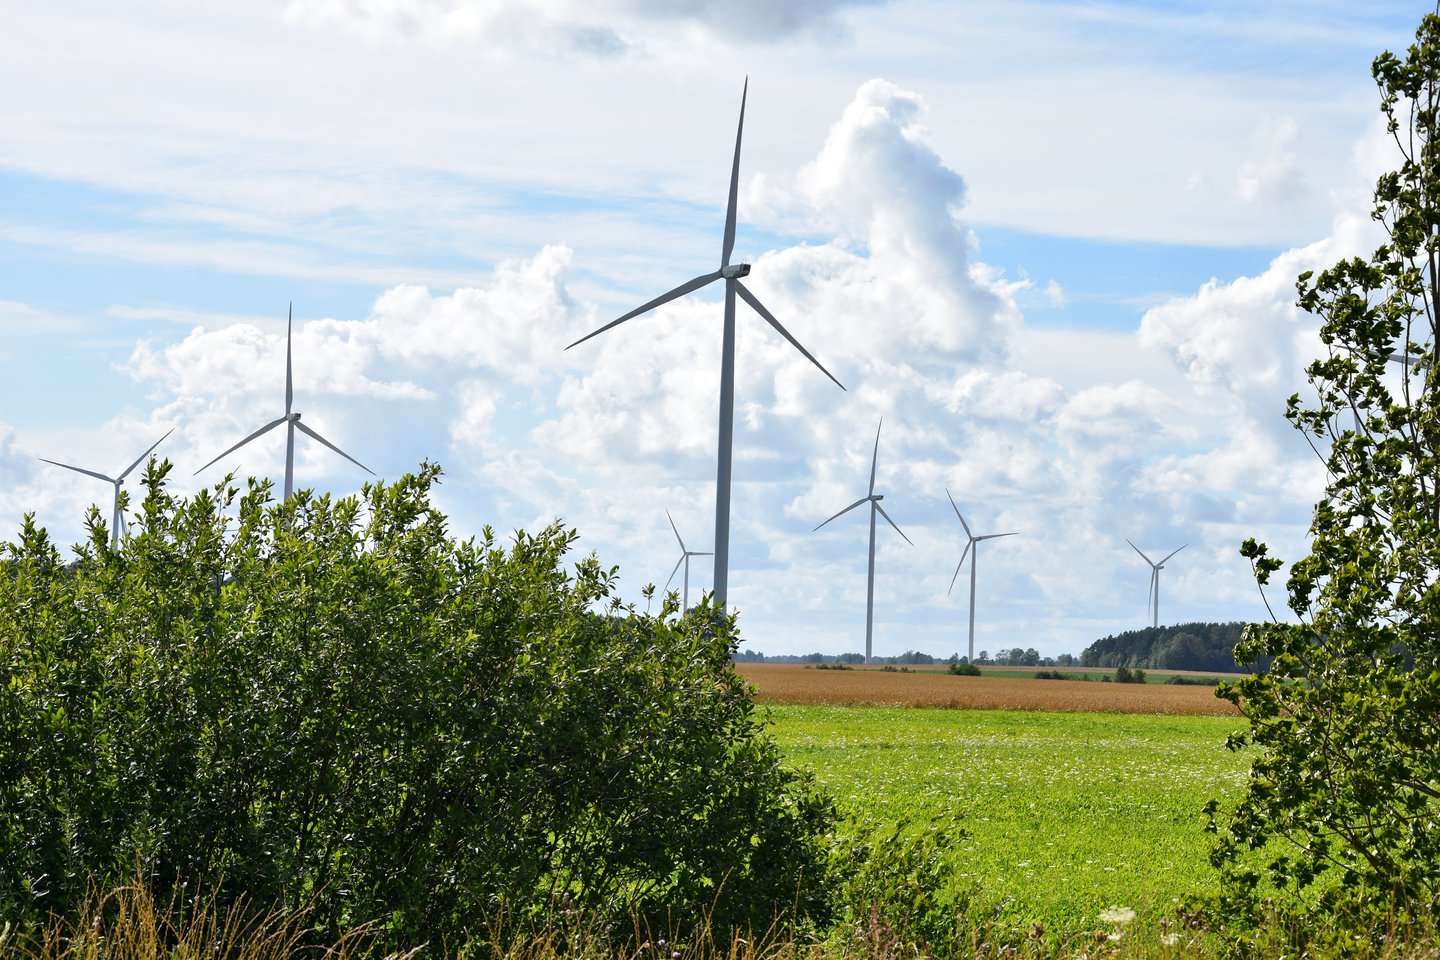 Pagal kvadratiniam teritorijos kilometrui tenkančią vėjo elektrinių galią Lietuva atsilieka ne tik nuo Vokietijos ar Danijos, bet ir nuo ES vidurkio.<br>LR archyvo nuotr.